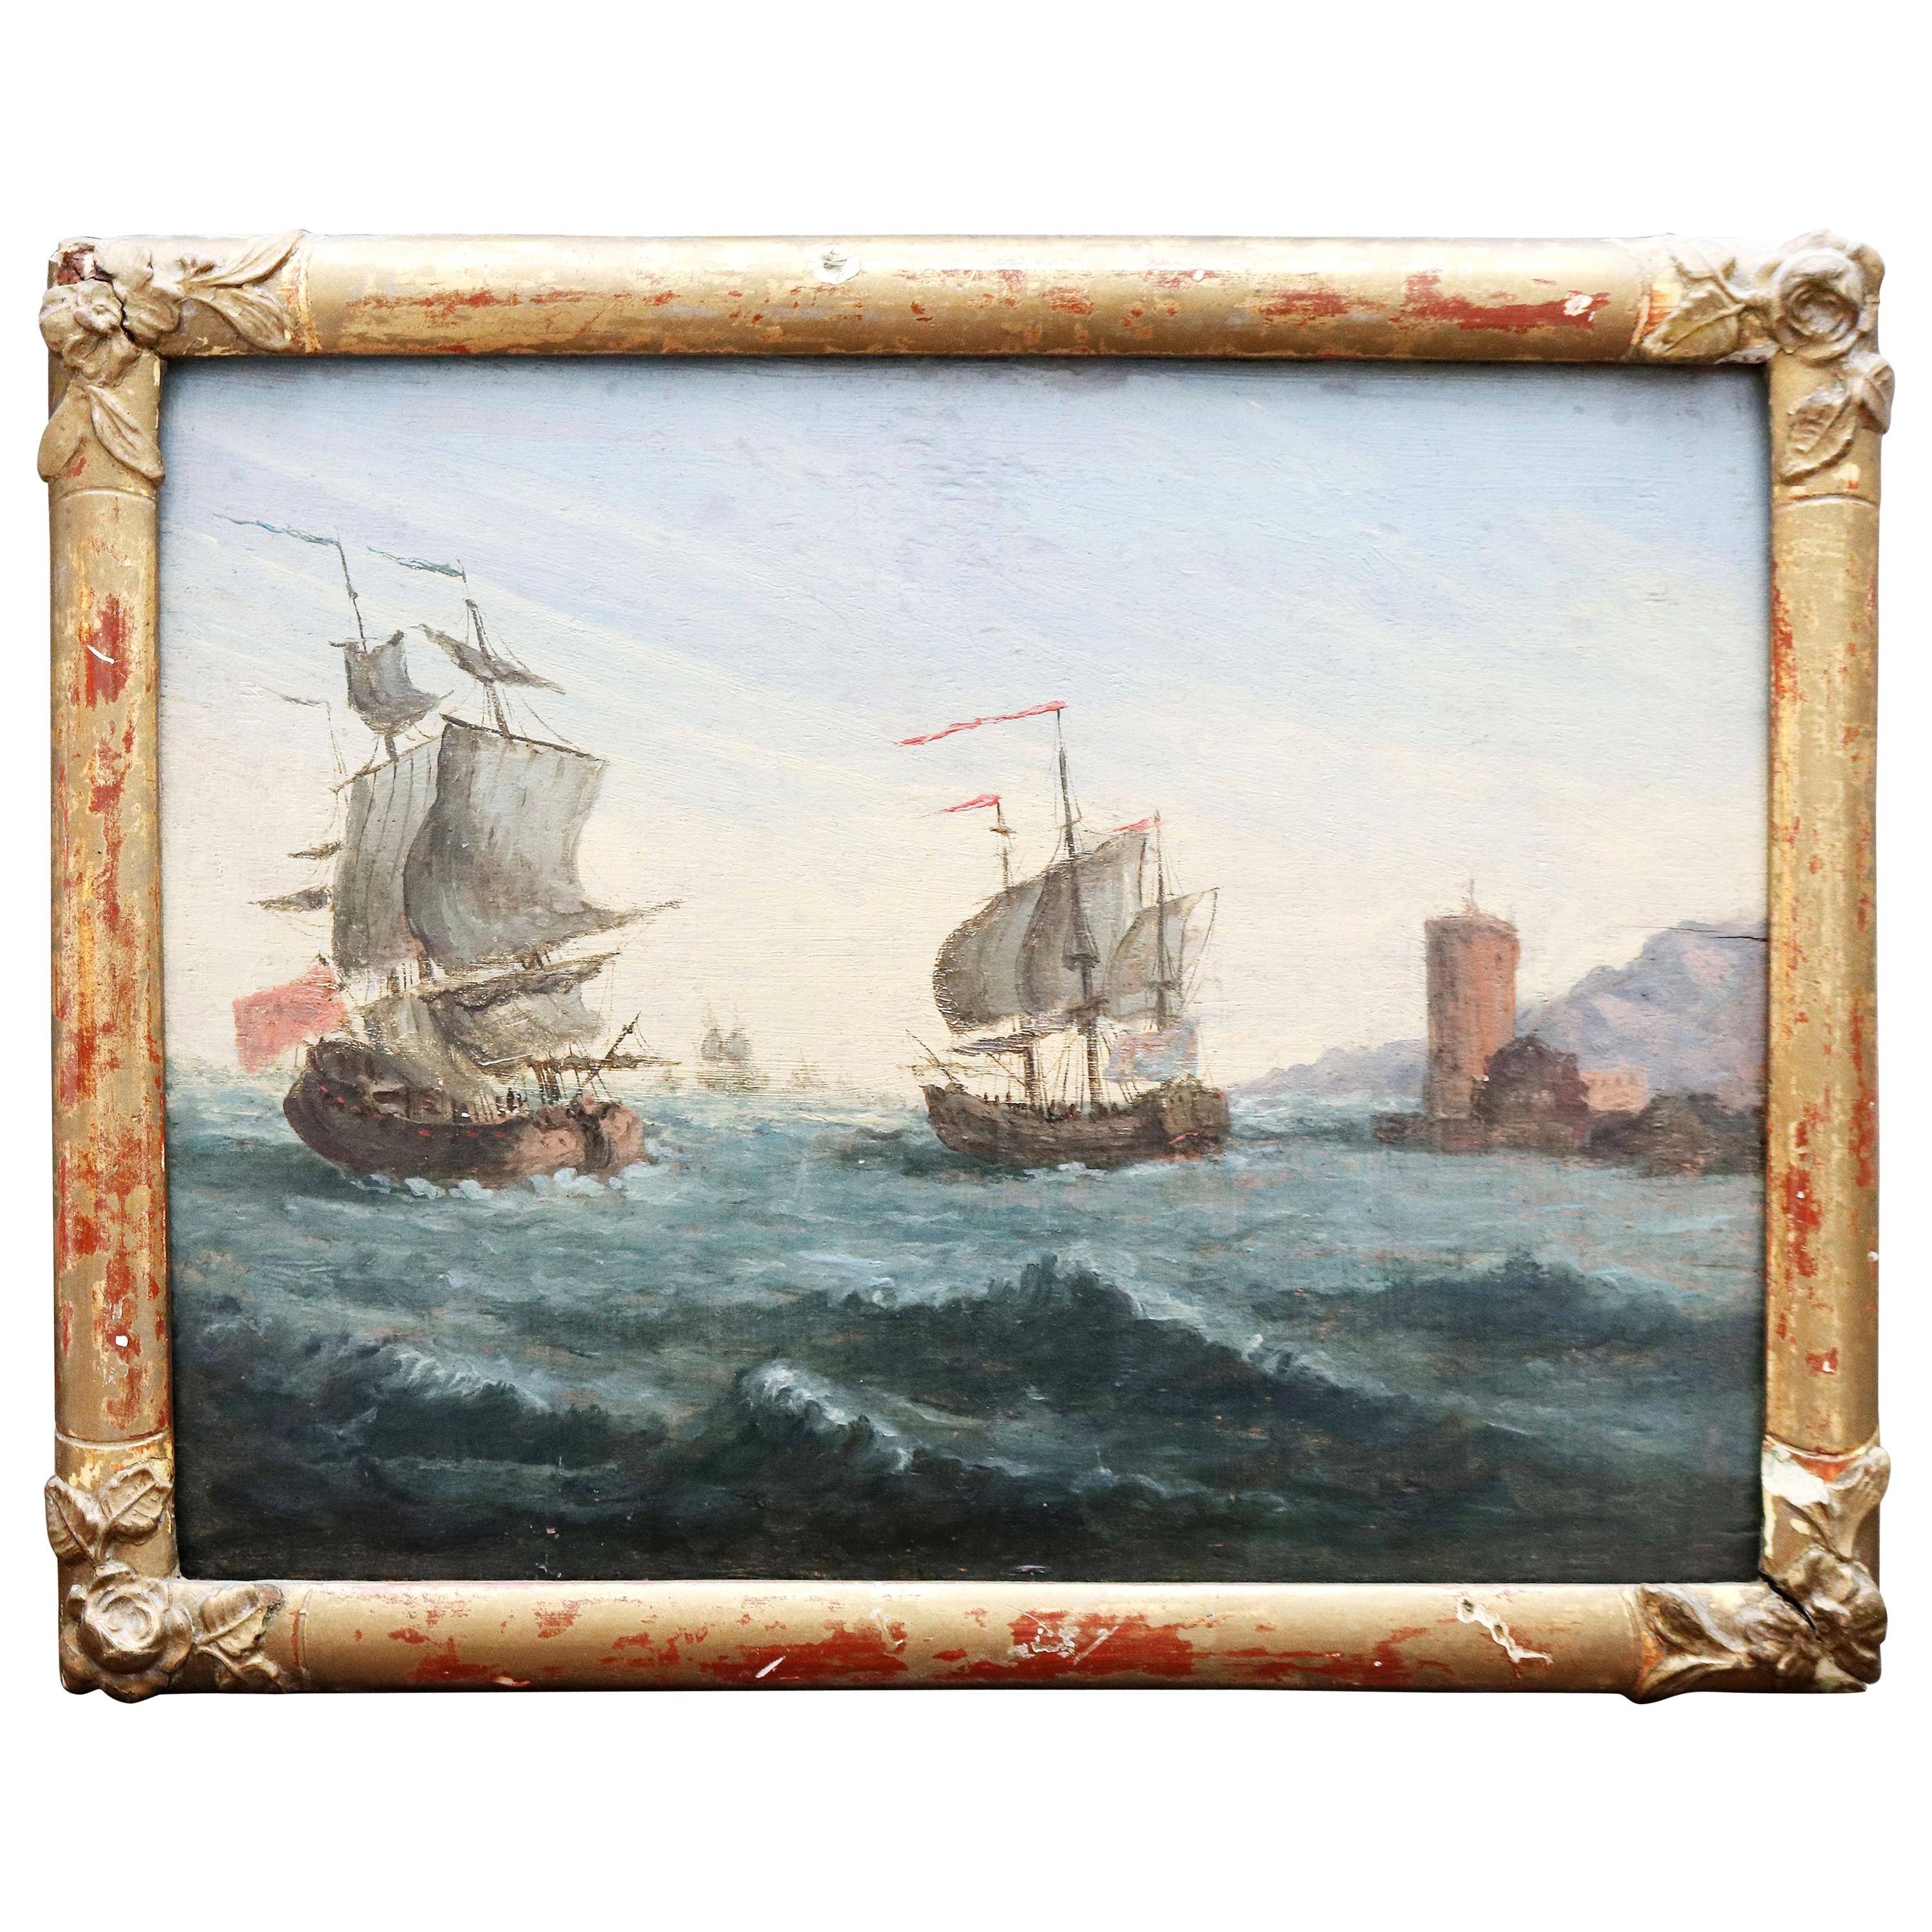 Peinture à l'huile sur bois du 19ème siècle représentant deux gallons, signée par la marine française